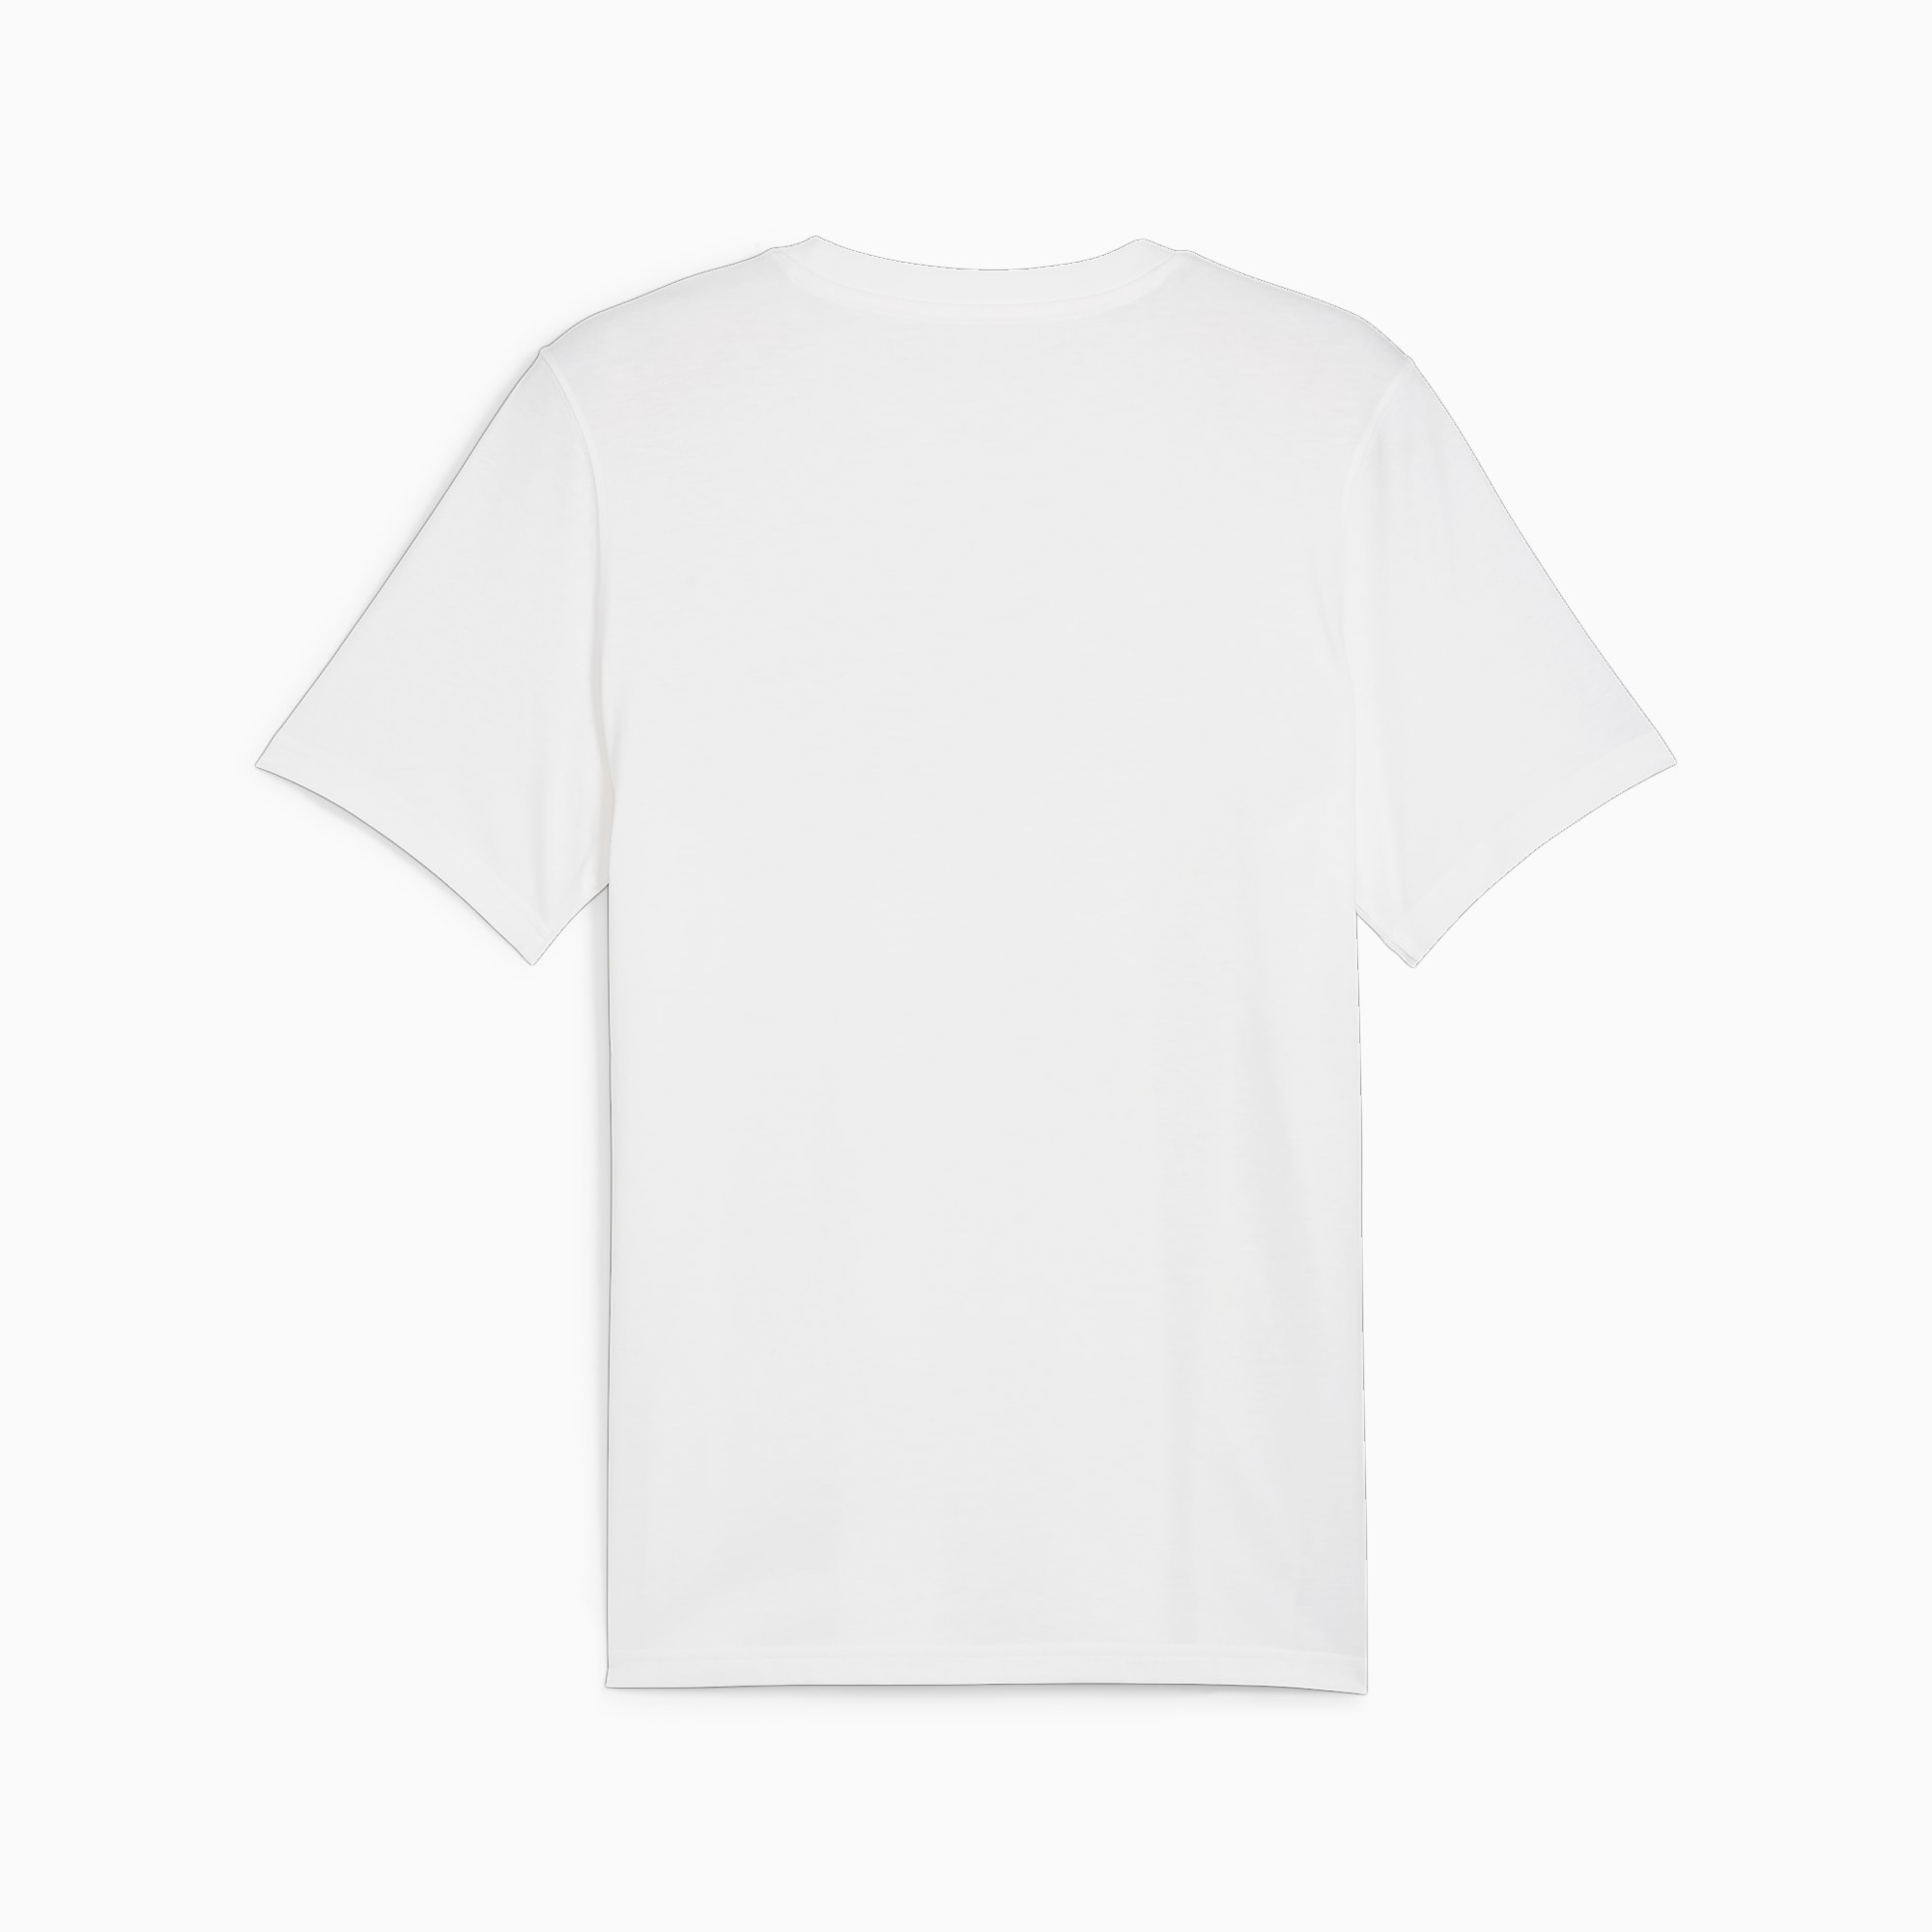 PUMA POWER T-shirt Met Print Voor Heren, Wit/Groen